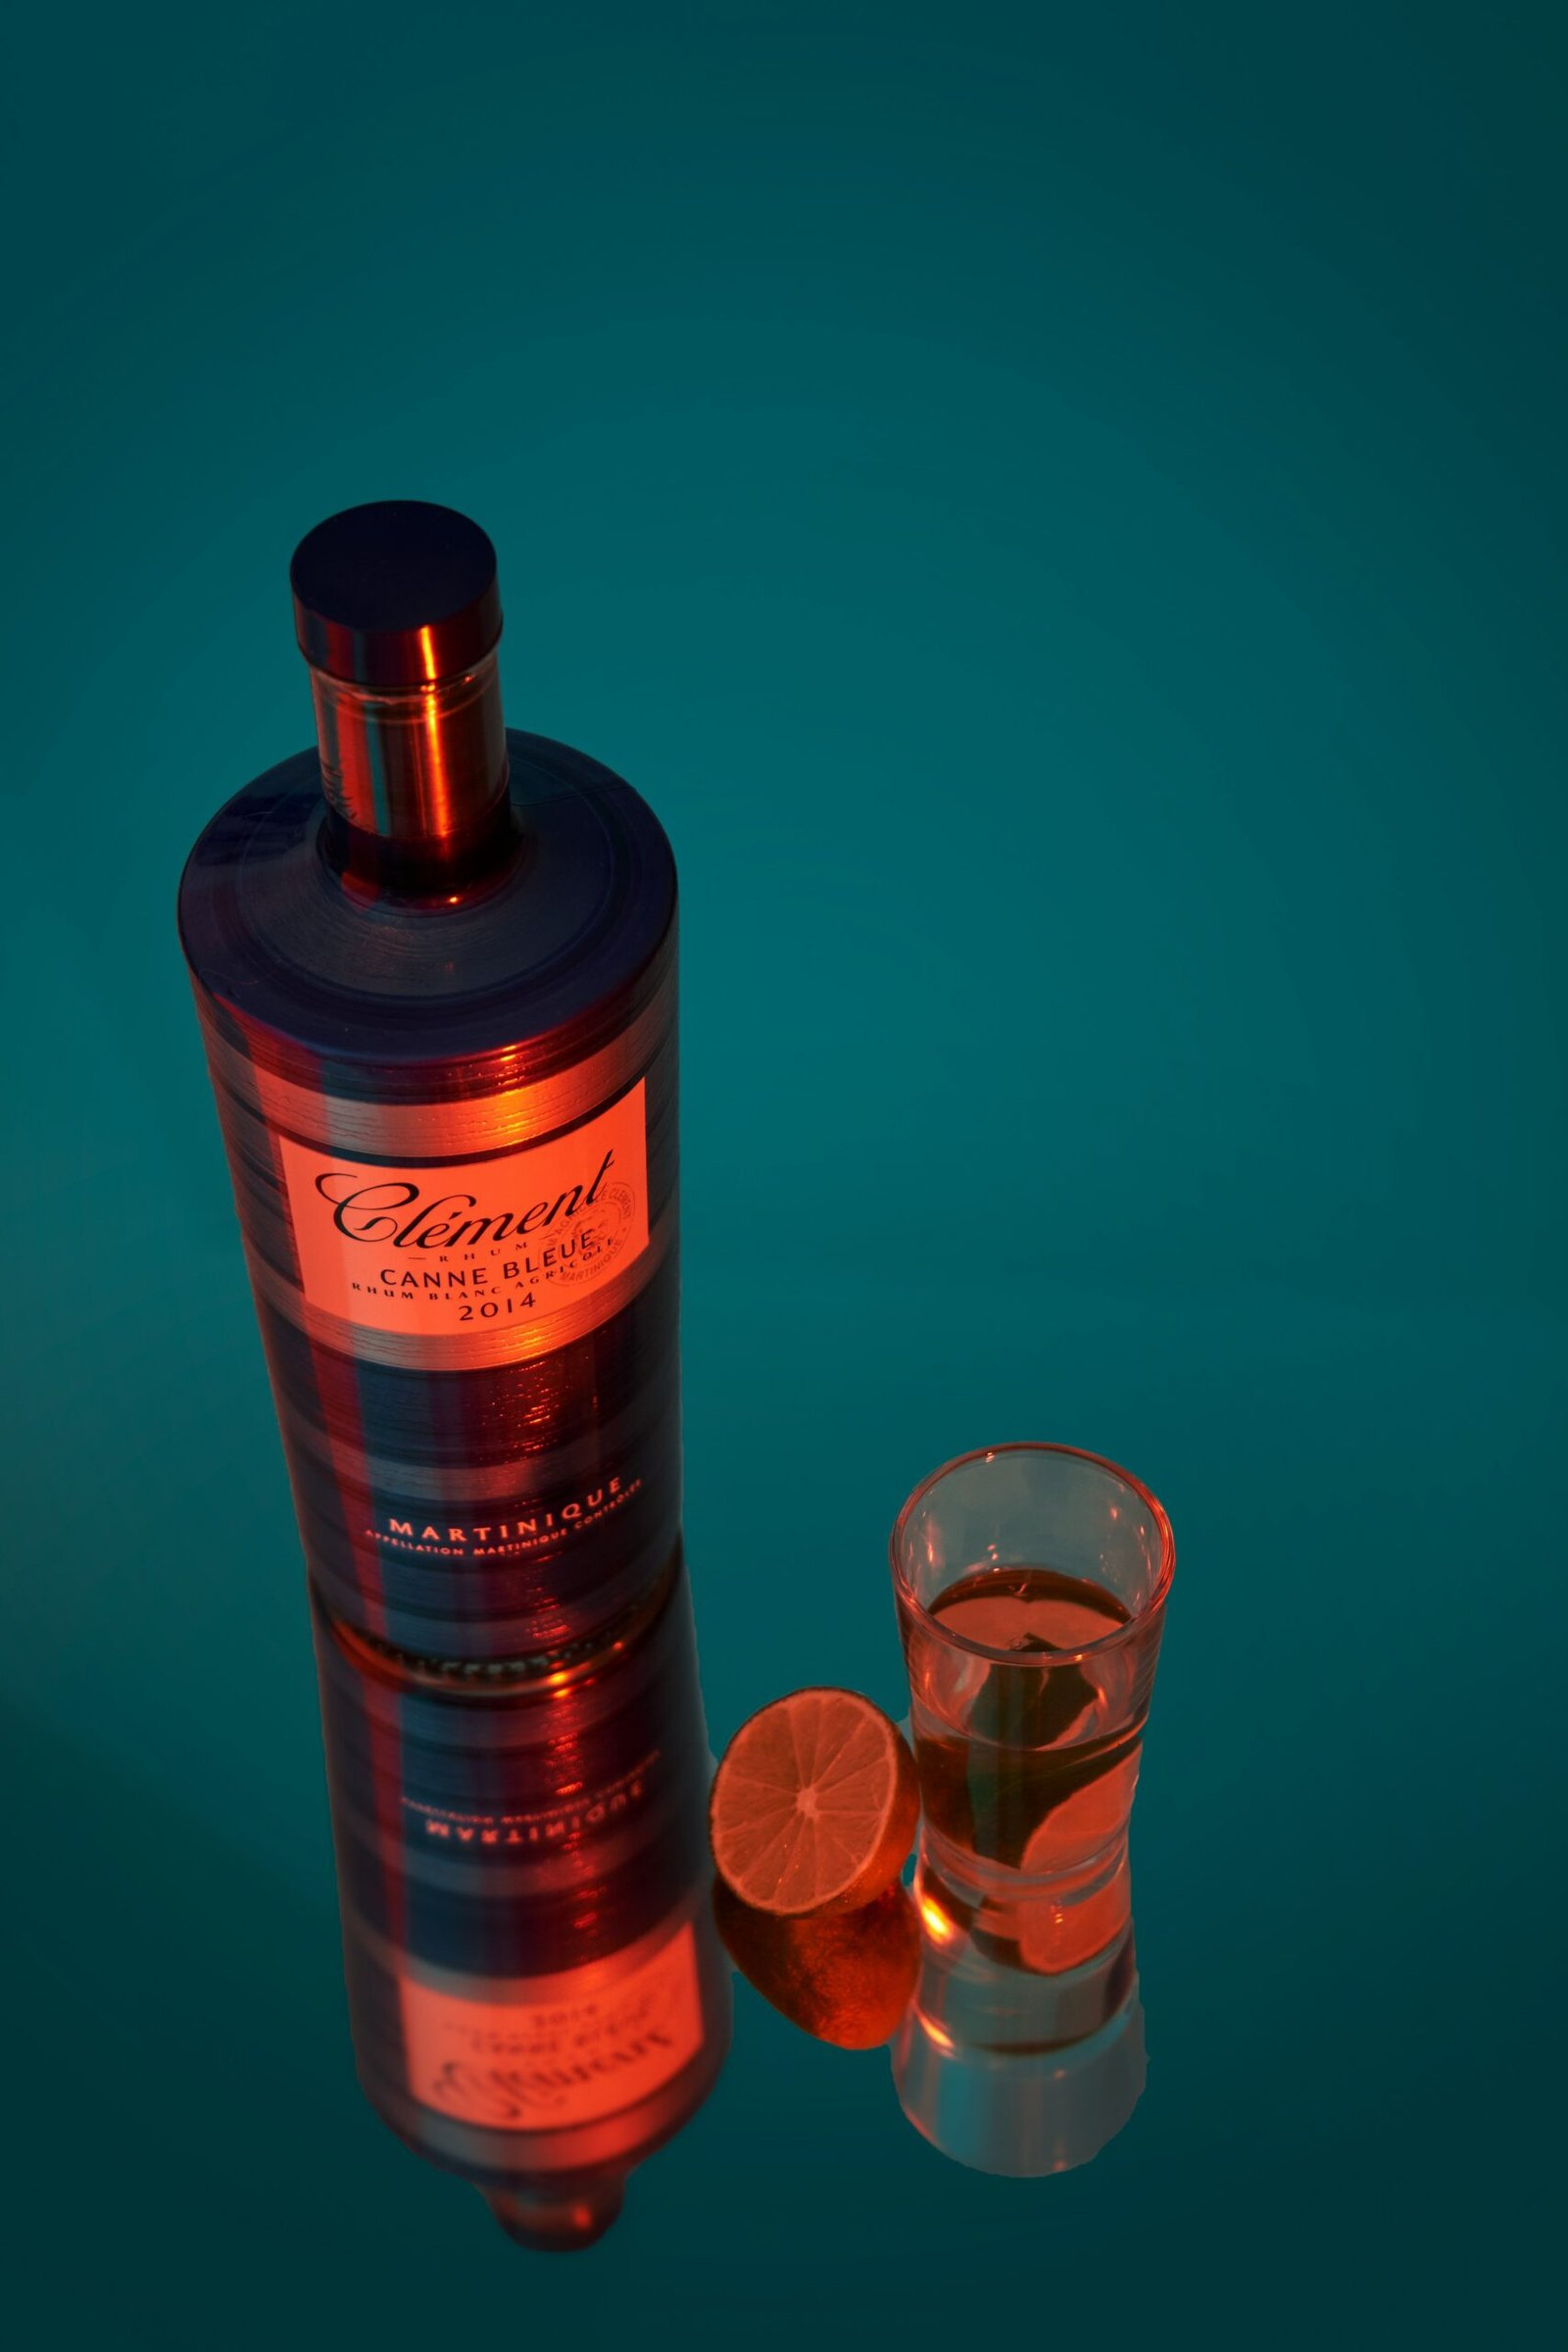 a bottle of liquor next to a shot glass